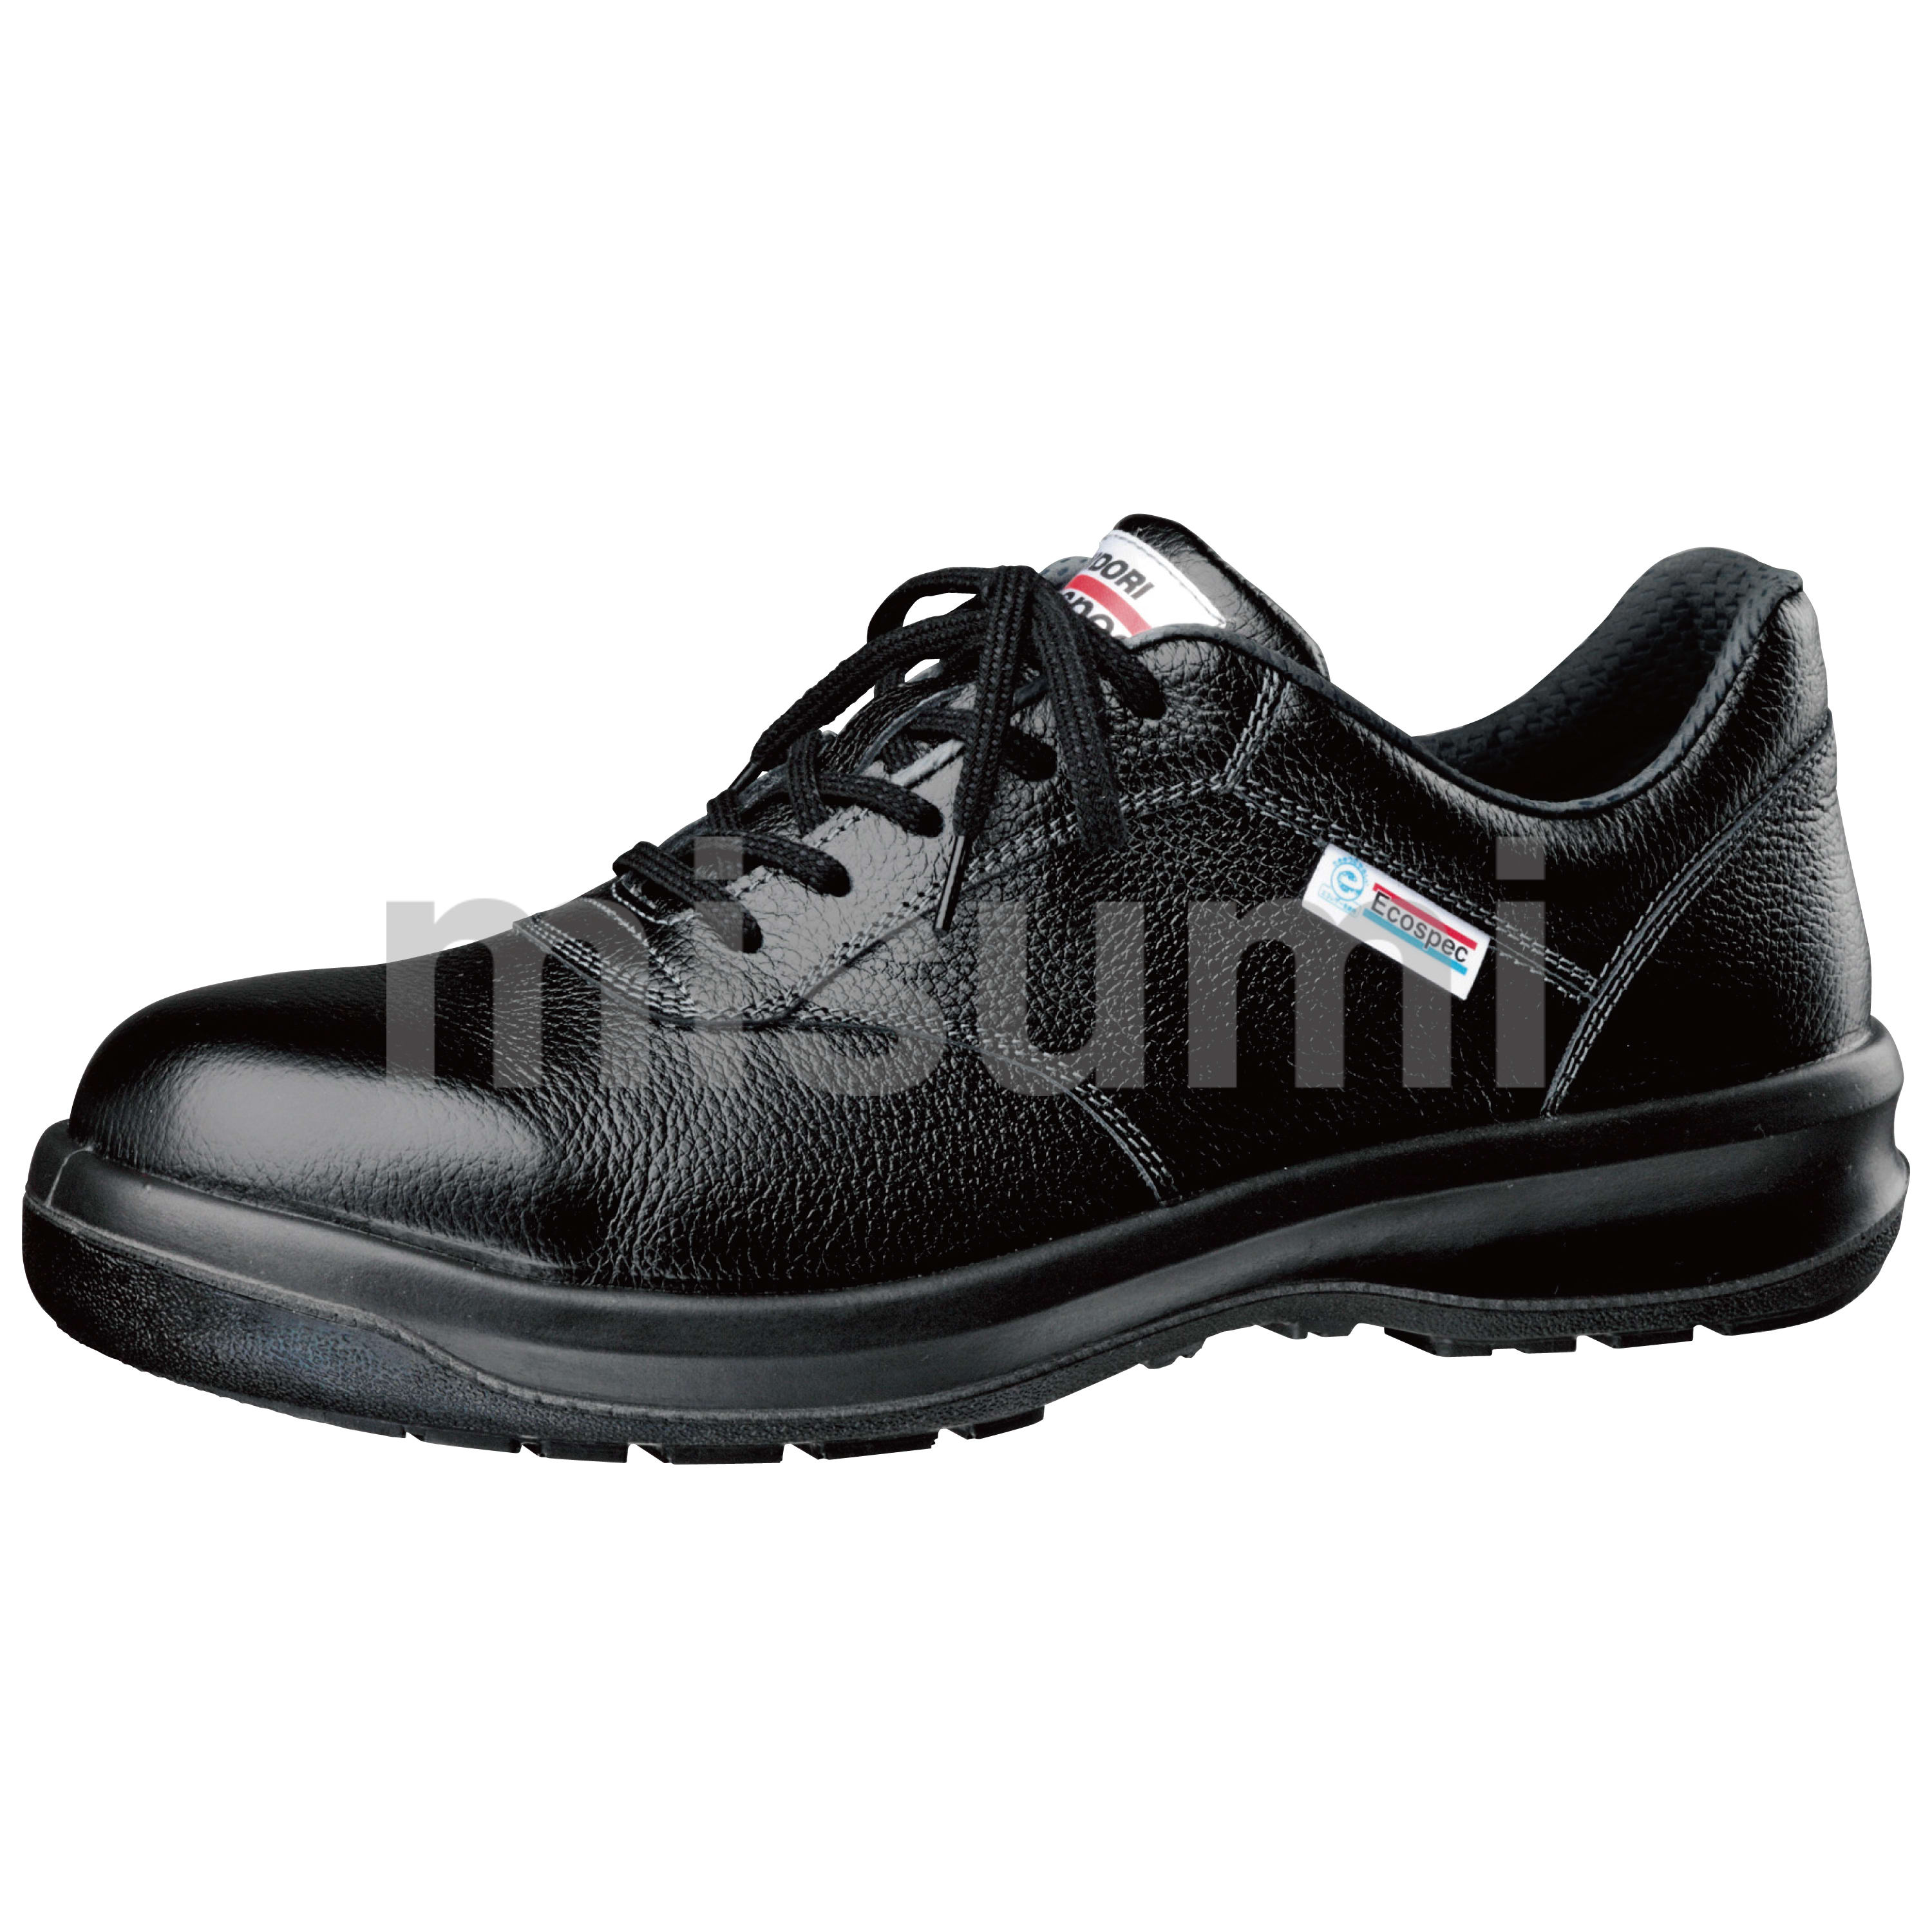 エコマーク認定 静電安全靴 エコスペック ESG3211 eco ブラック ミドリ安全 MISUMI(ミスミ)